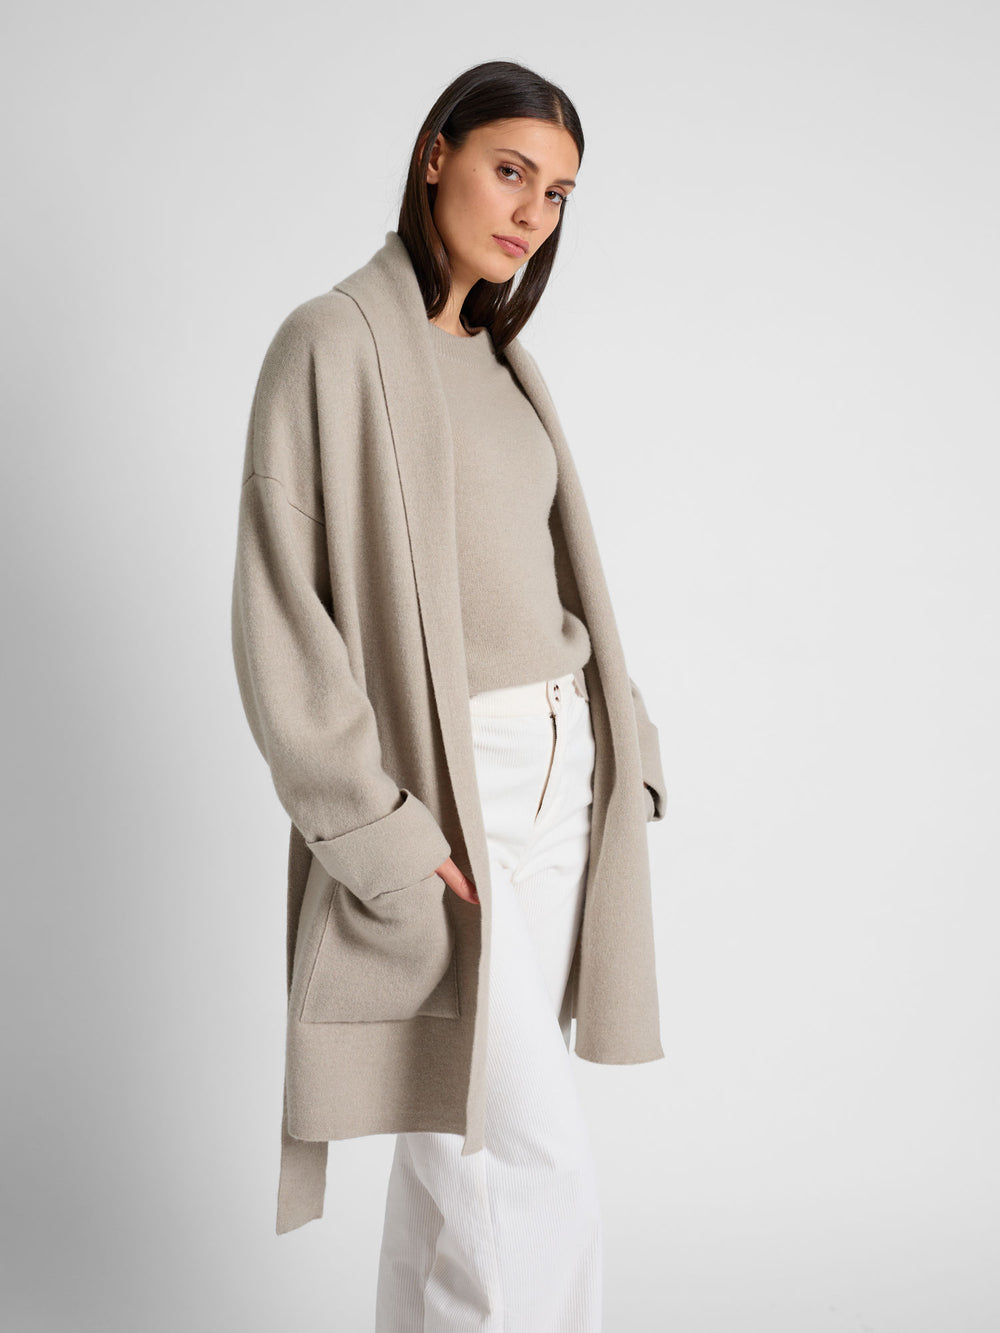 Cashmere coat "Liv" in 100% pure cashmere. Scandinavian design by Kashmina. Color: Ginger.